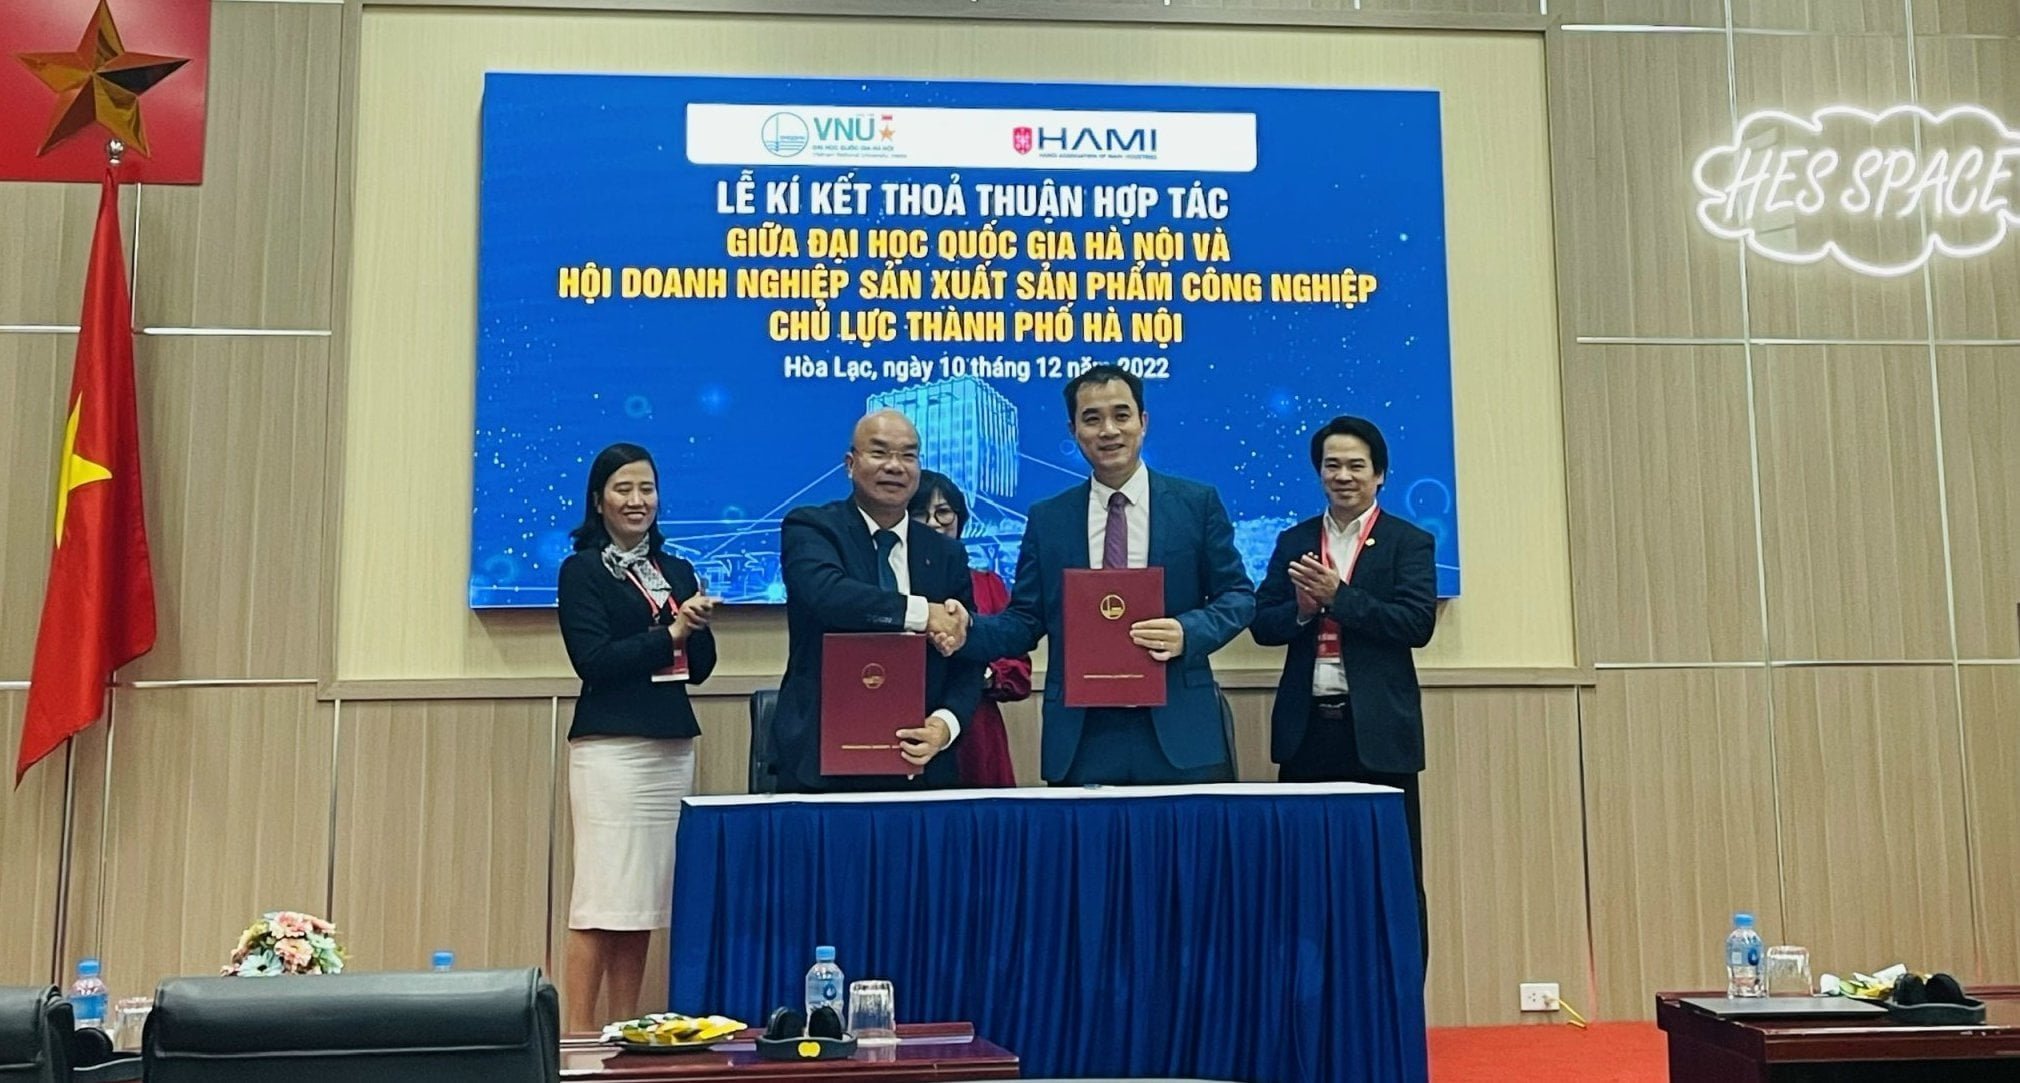 SPCNCL Hà Nội:Phó Chủ tịch Hội công nghiệp chủ lực HAMI ký kết thoả thuận hợp tác với Đại học Quốc gia Hà Nội